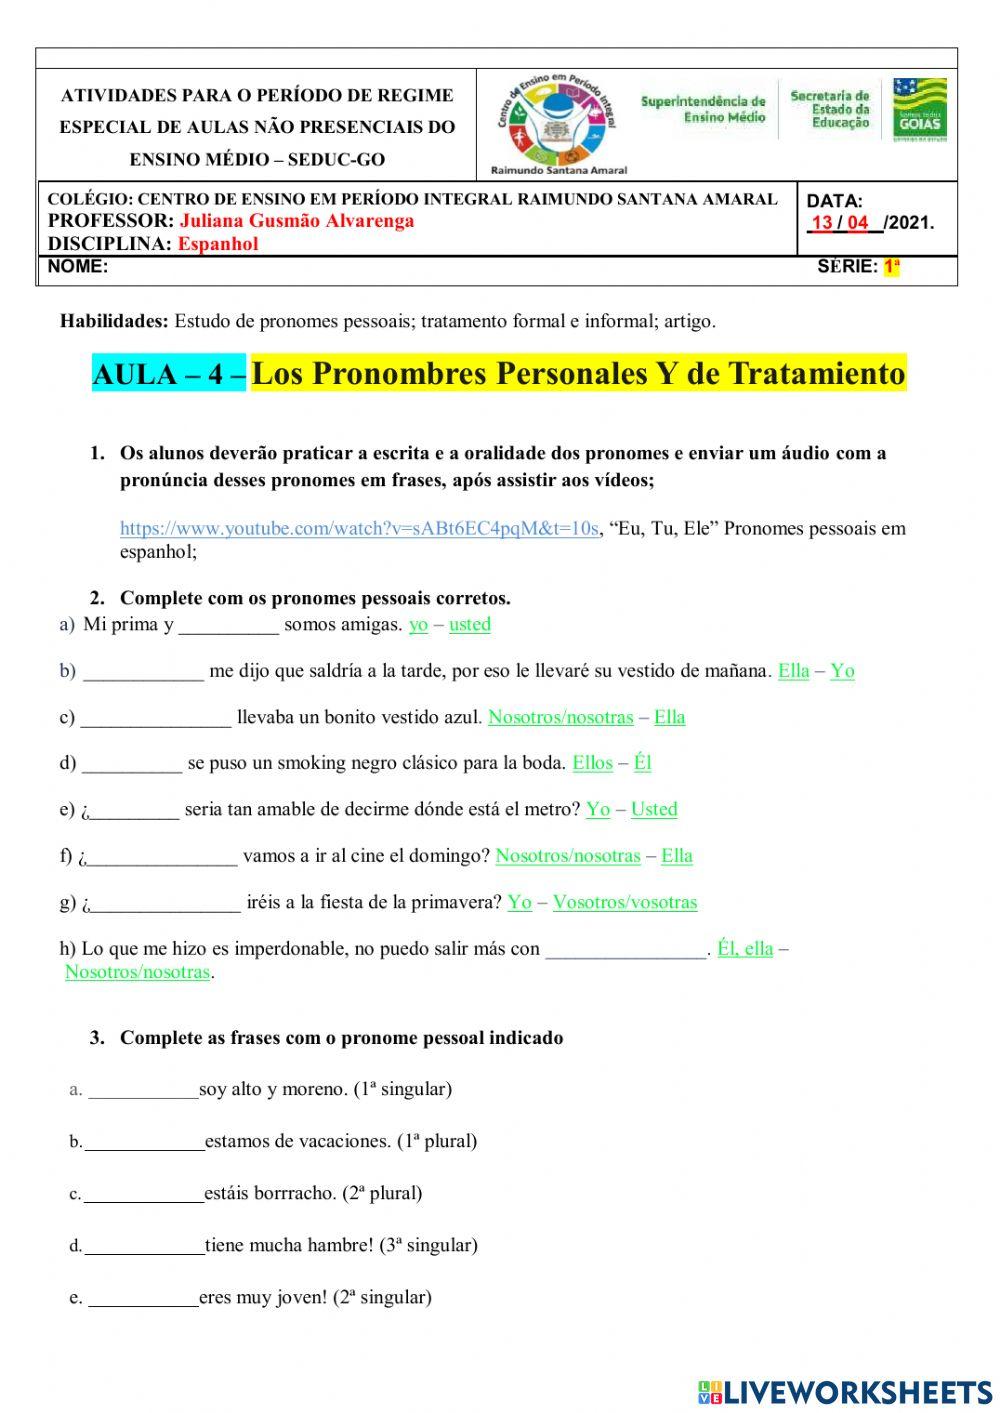 Pronomes pessoais em espanhol (pronombres personales) - Toda Matéria